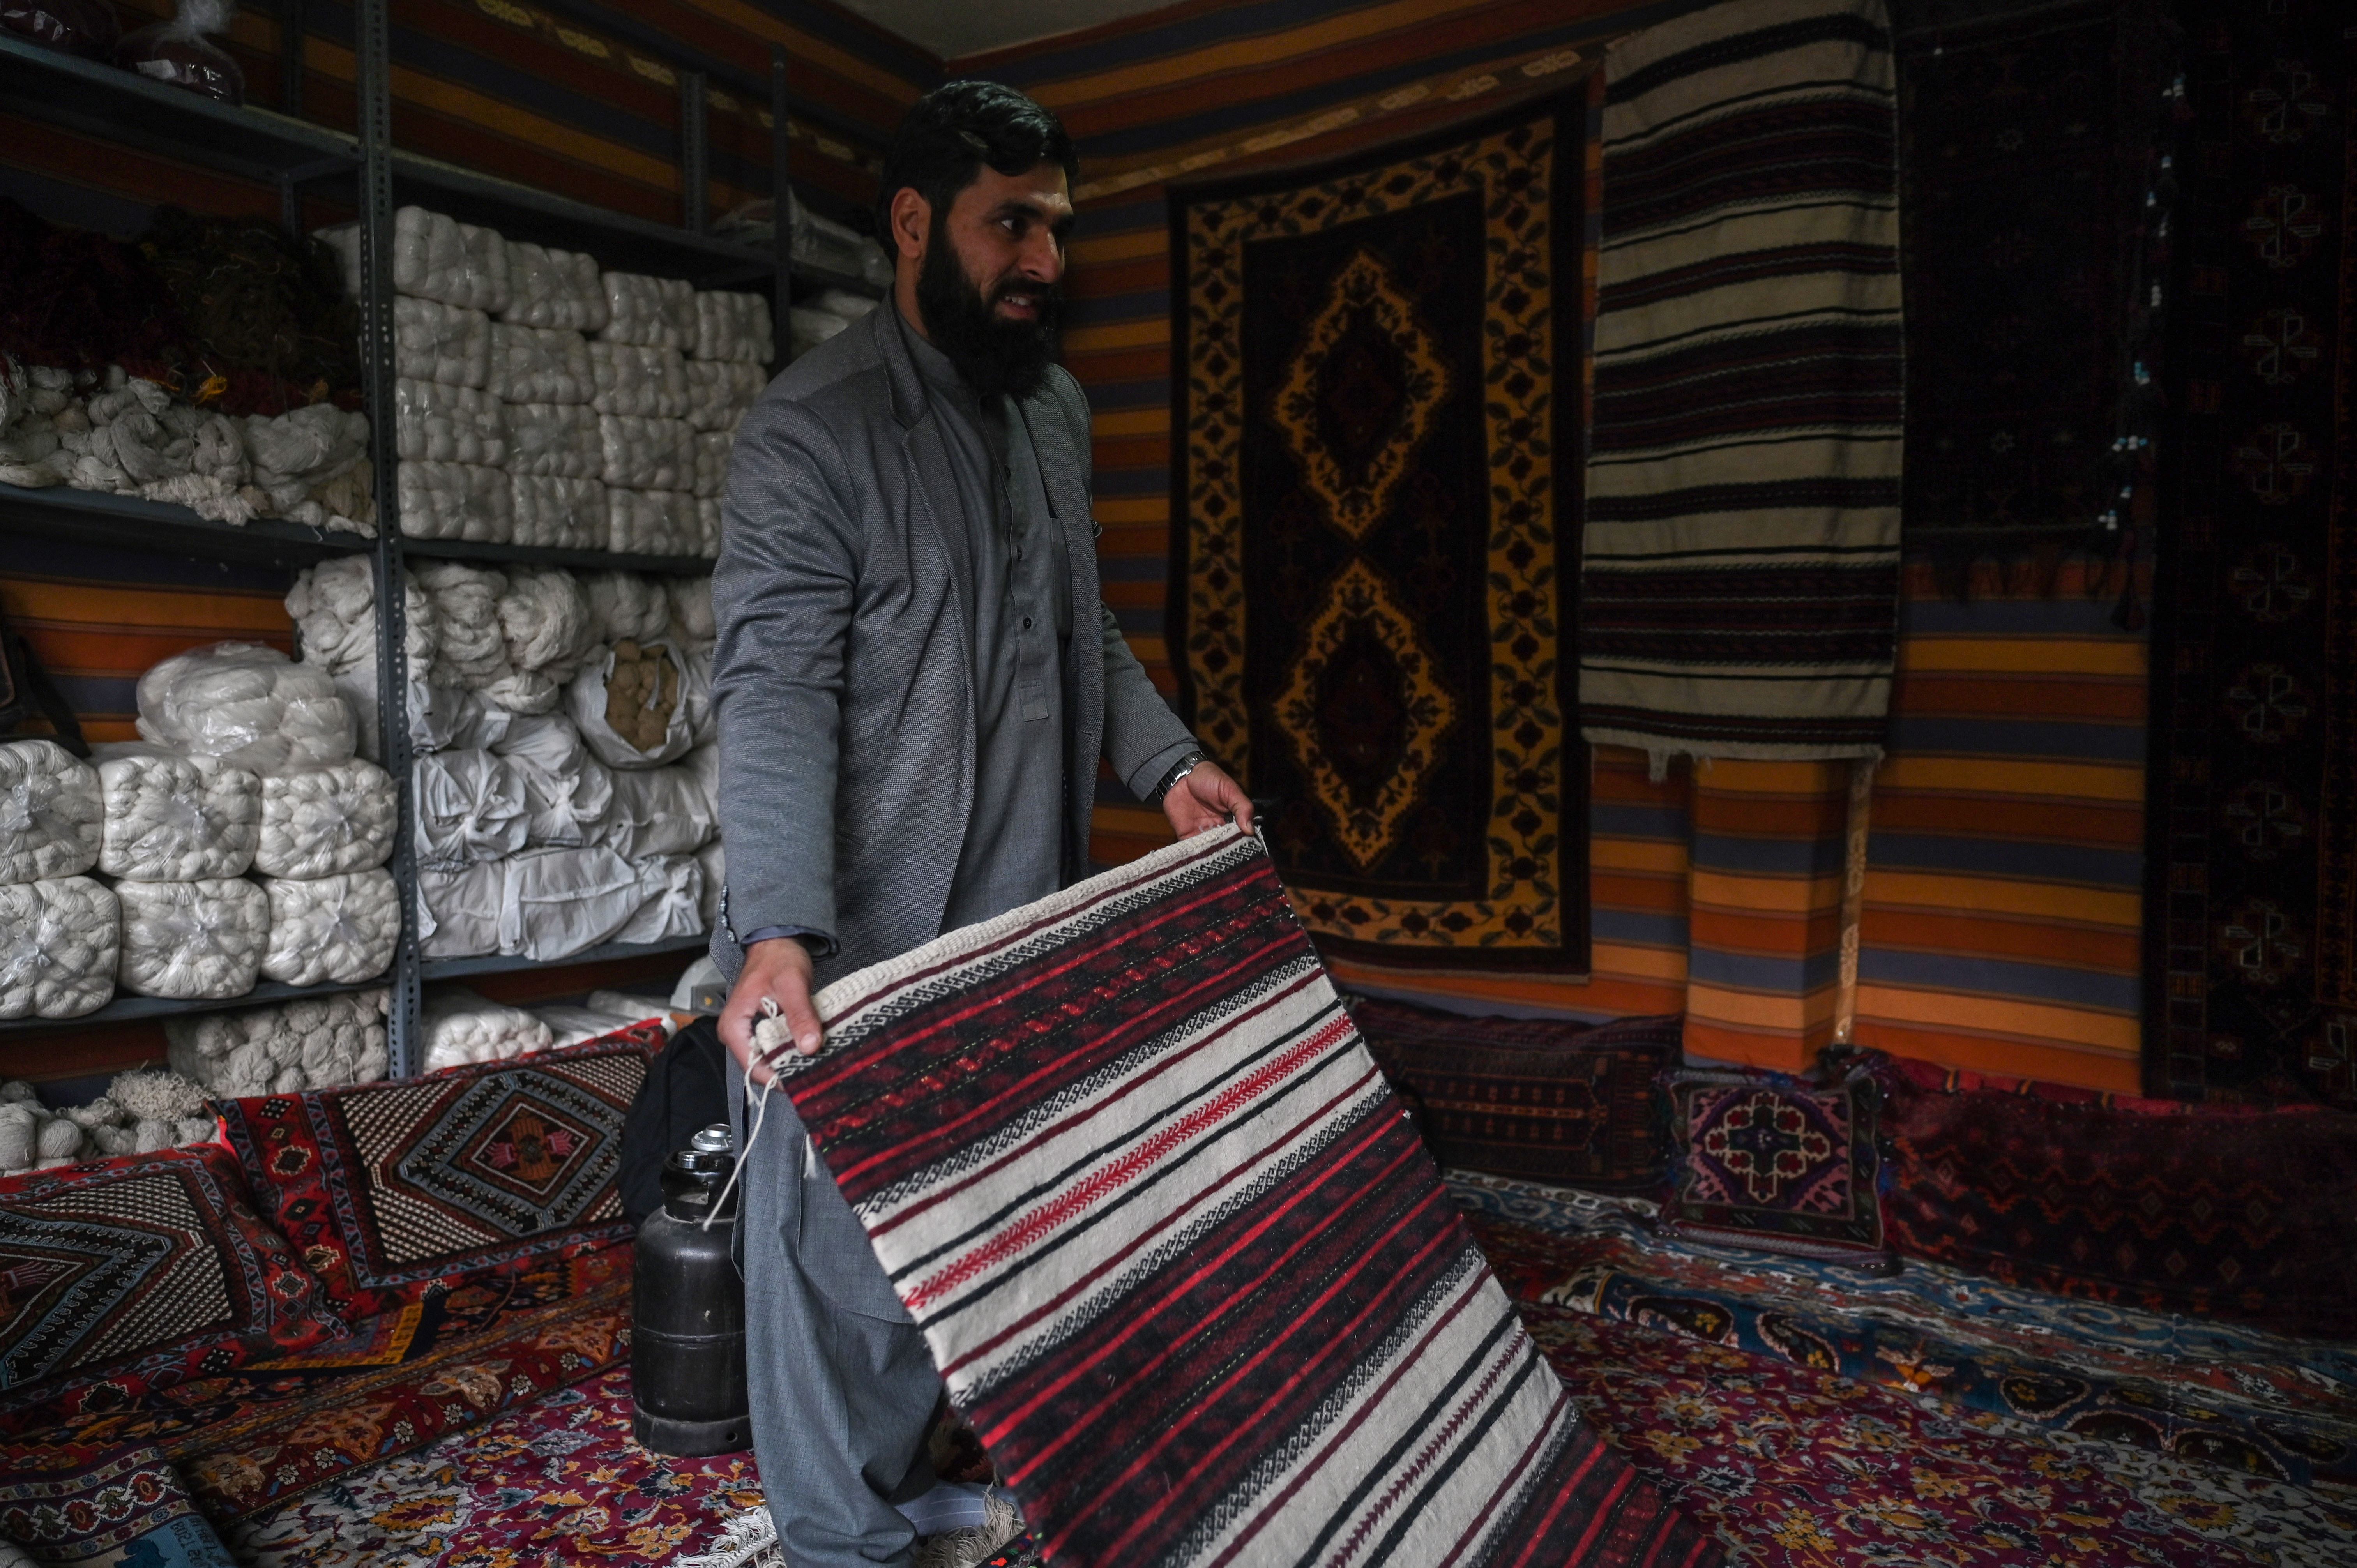 صناعة السجاد في أفغانستان في دائرة الخطر ... فما علاقة "طالبان"؟